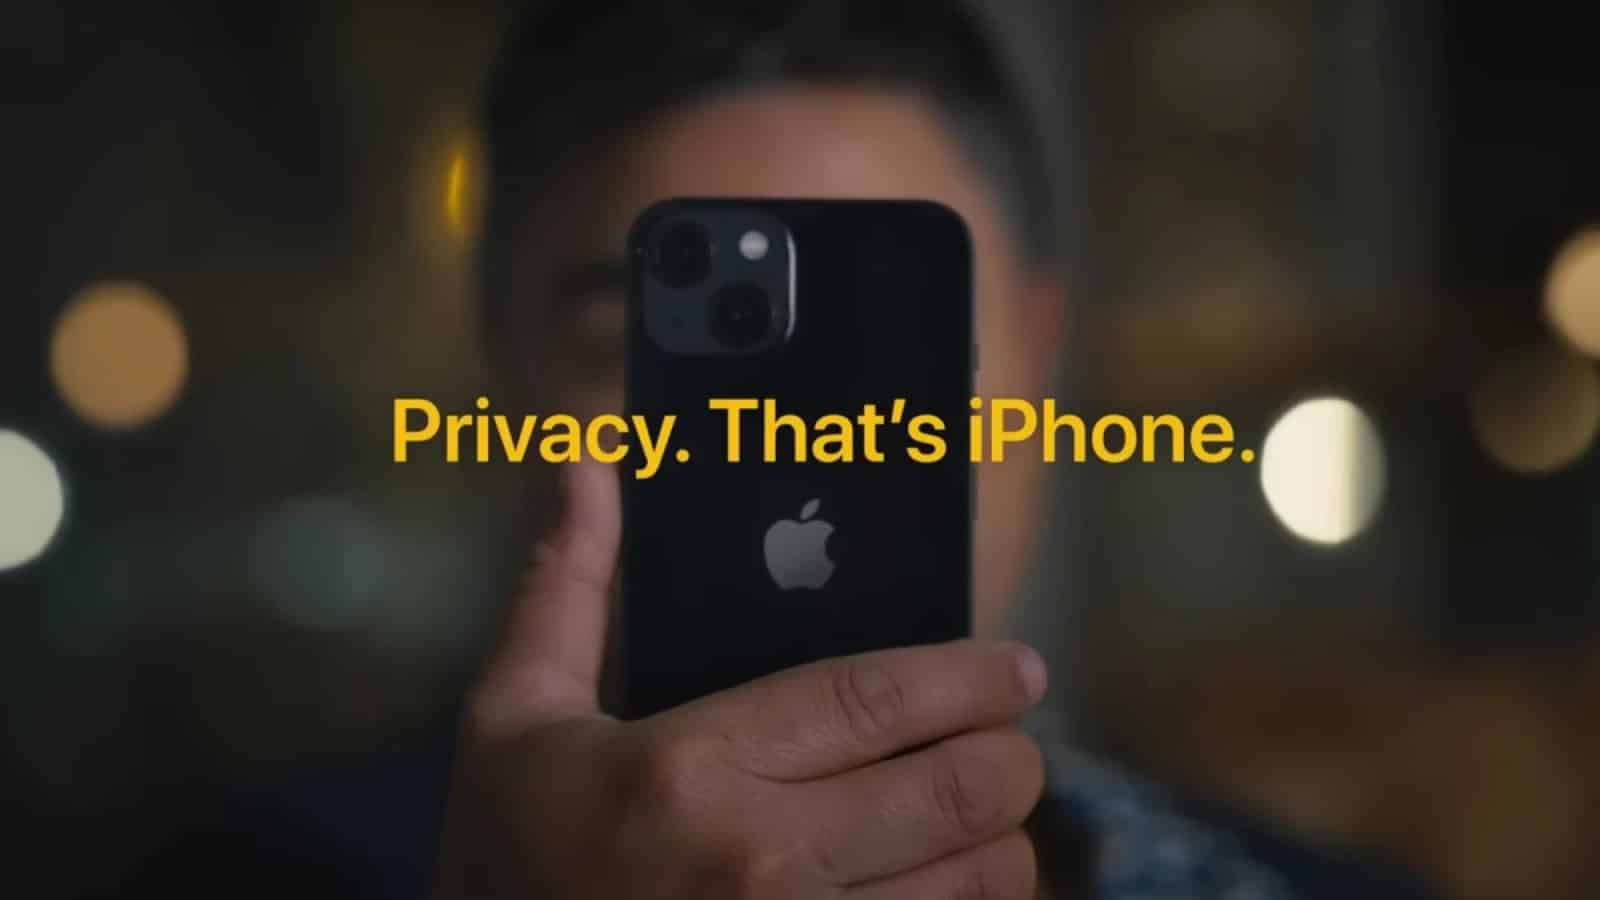 Πώς το iPhone προστατεύει την ιδιωτικότητα – Η μικρού μήκους ταινία της Apple με άρωμα Ted Lasso